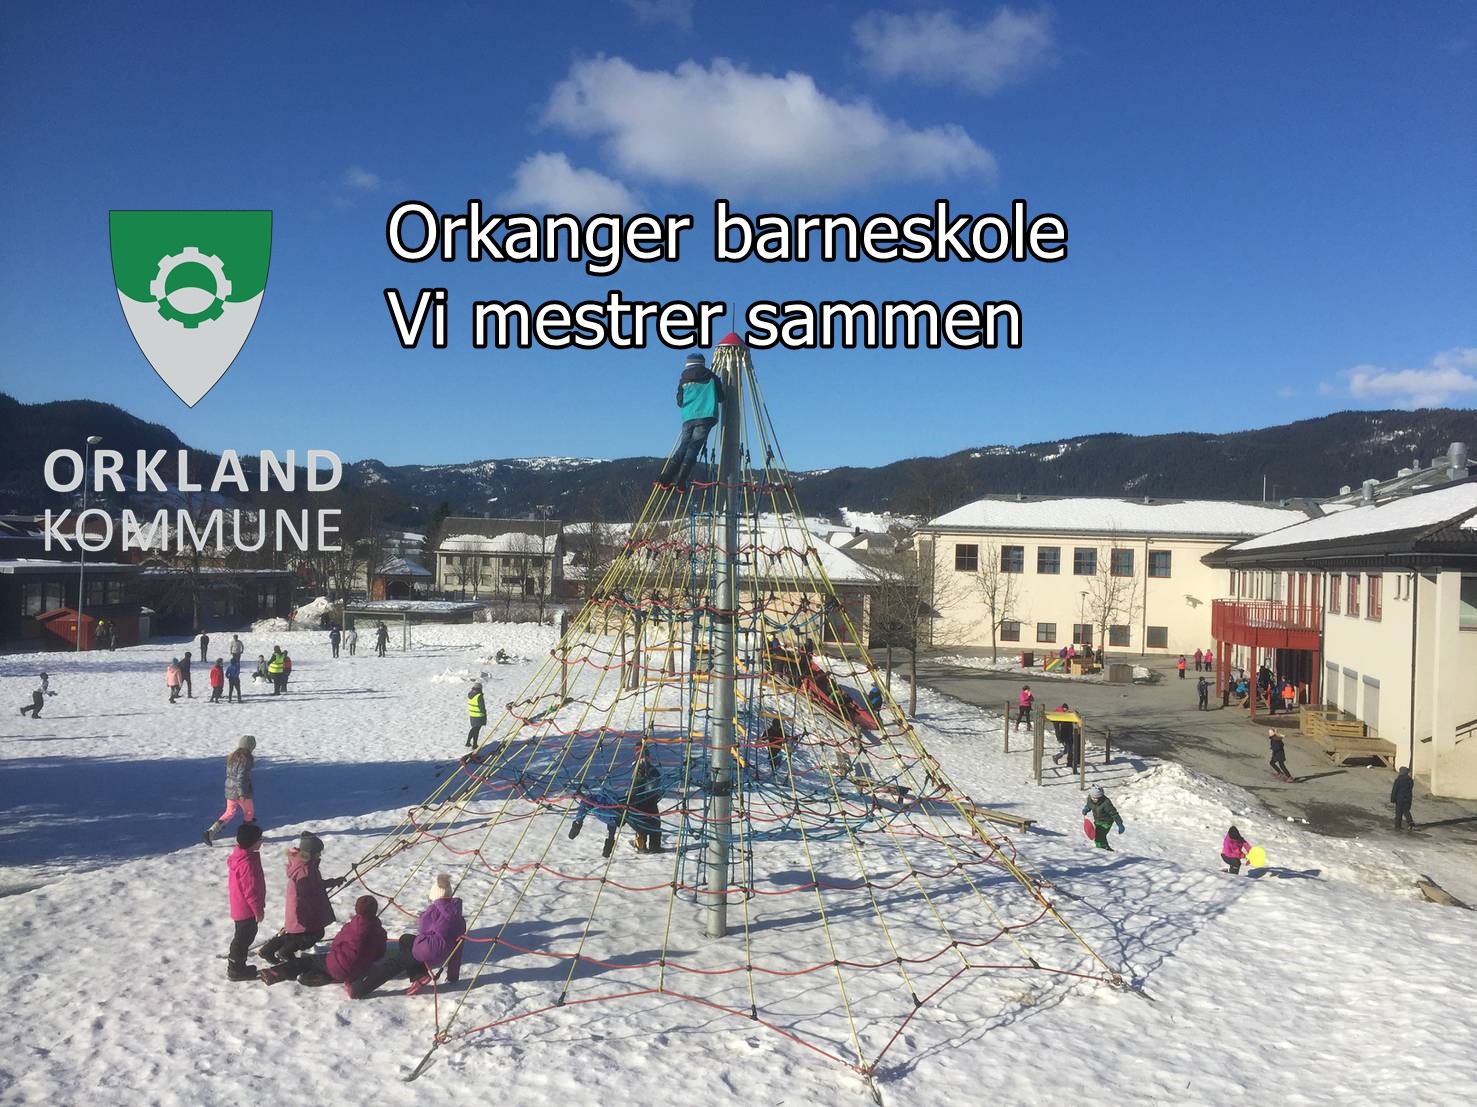 Orkland kommune Orkanger barneskole